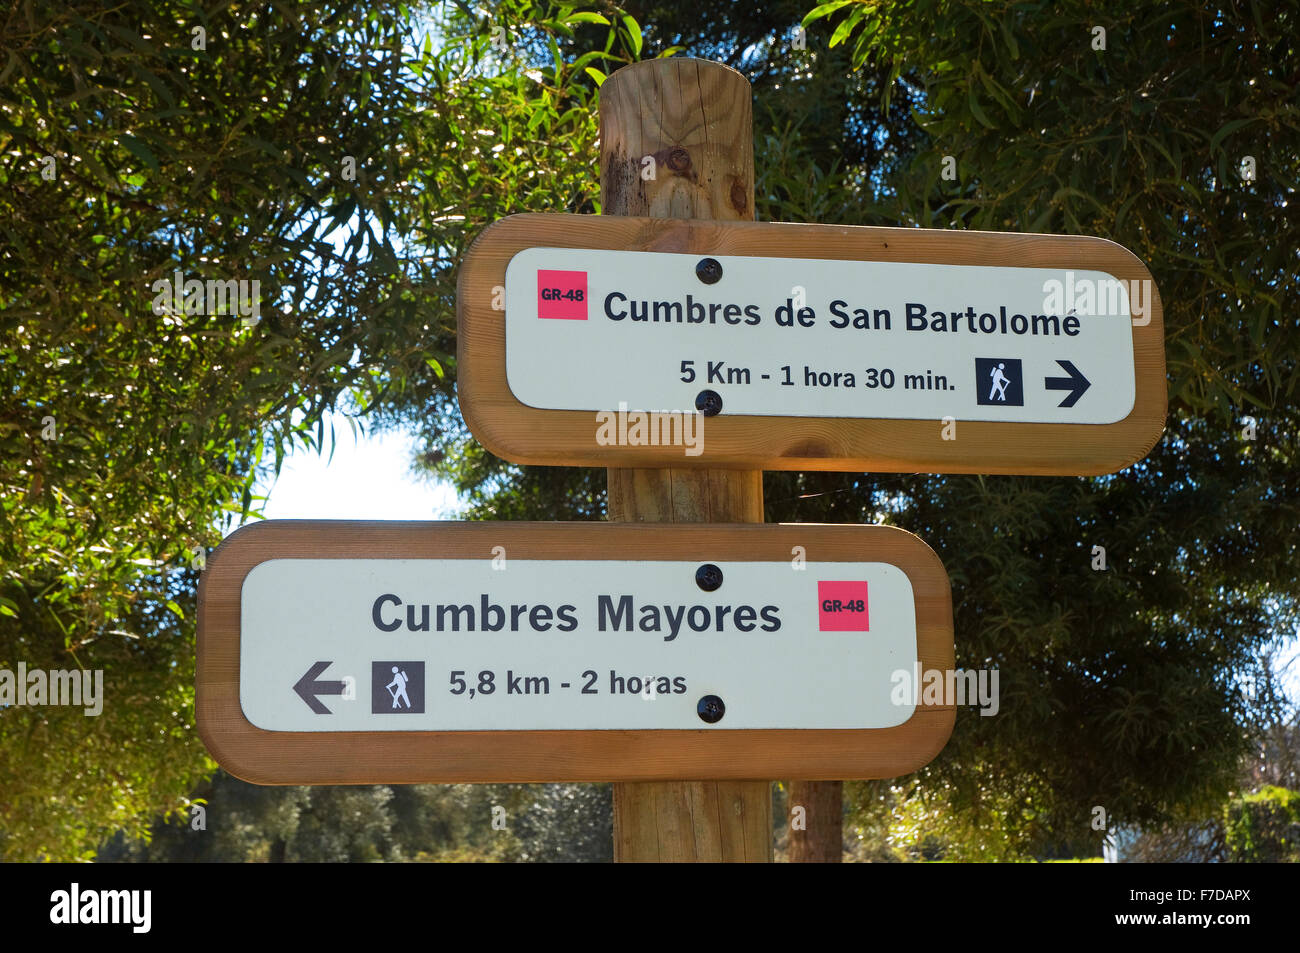 Le Parc Naturel de Sierra de Aracena, chemin de l'affiche, Cumbres de Enmedio, province de Huelva, Andalousie, Espagne, Europe Banque D'Images